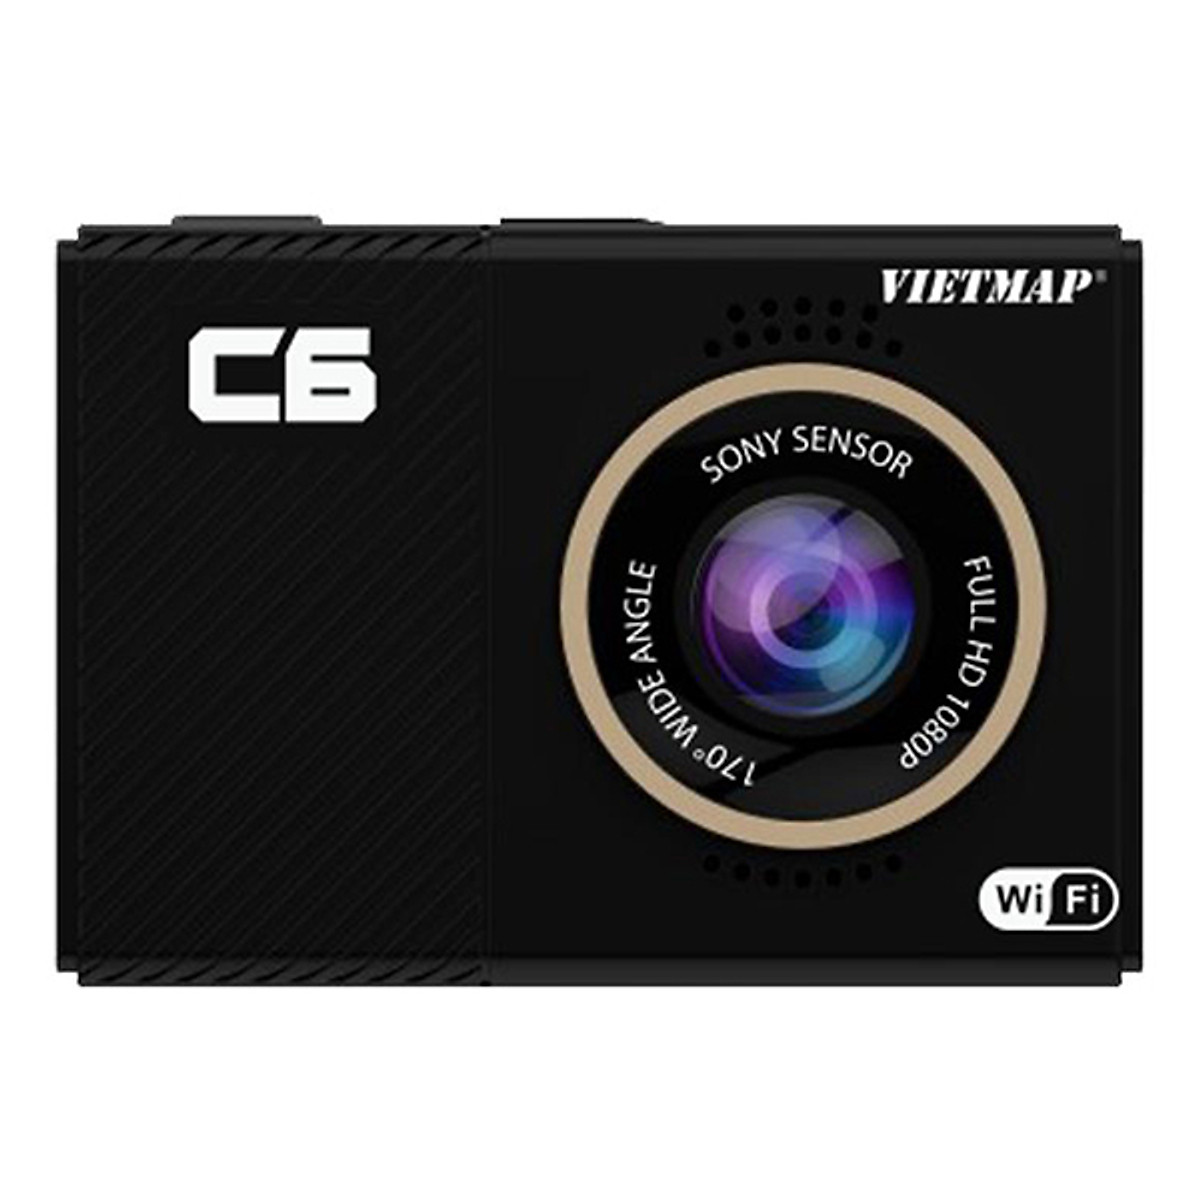 Camera hành trình Vietmap C6 ghi hình Full HD 1080P - Hàng nhập khẩu